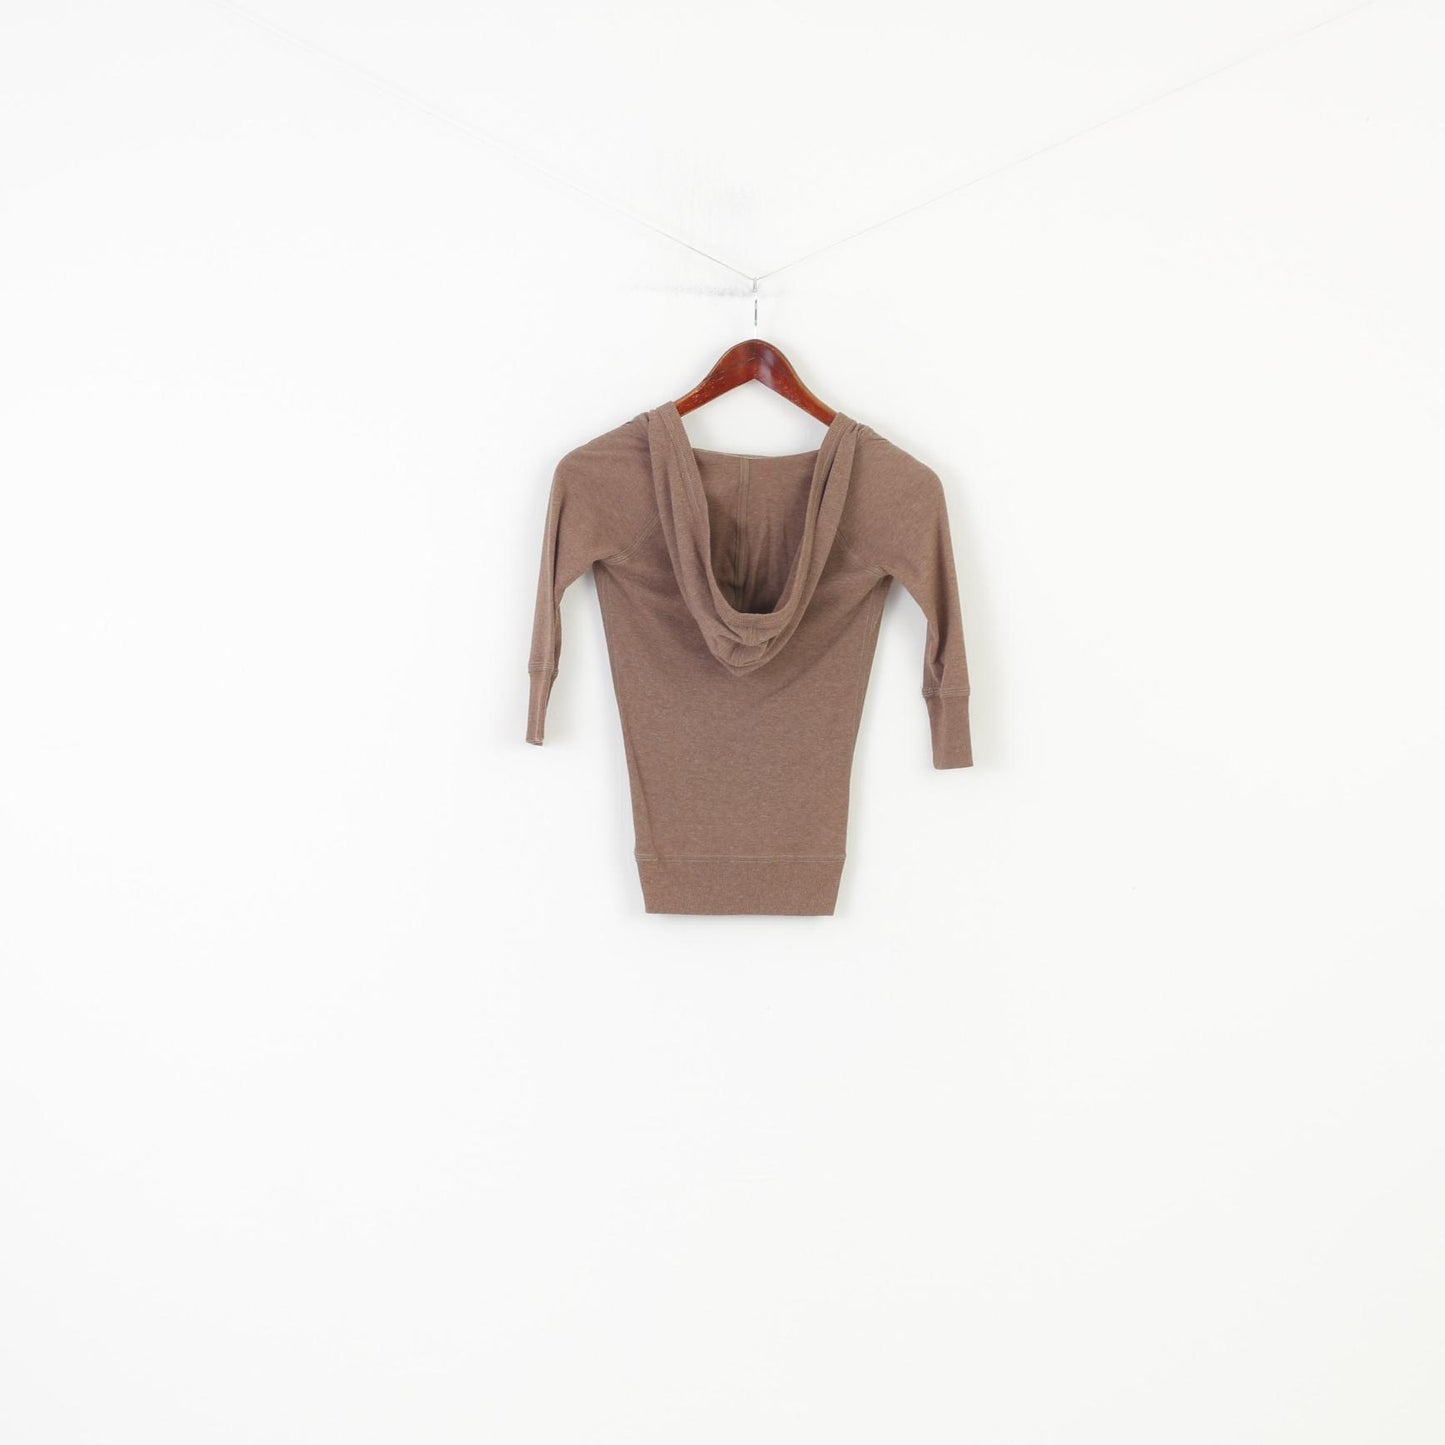 Abercrombie Girls L Shirt Jumper Brown Cotton Hood V Neck Vintage Top